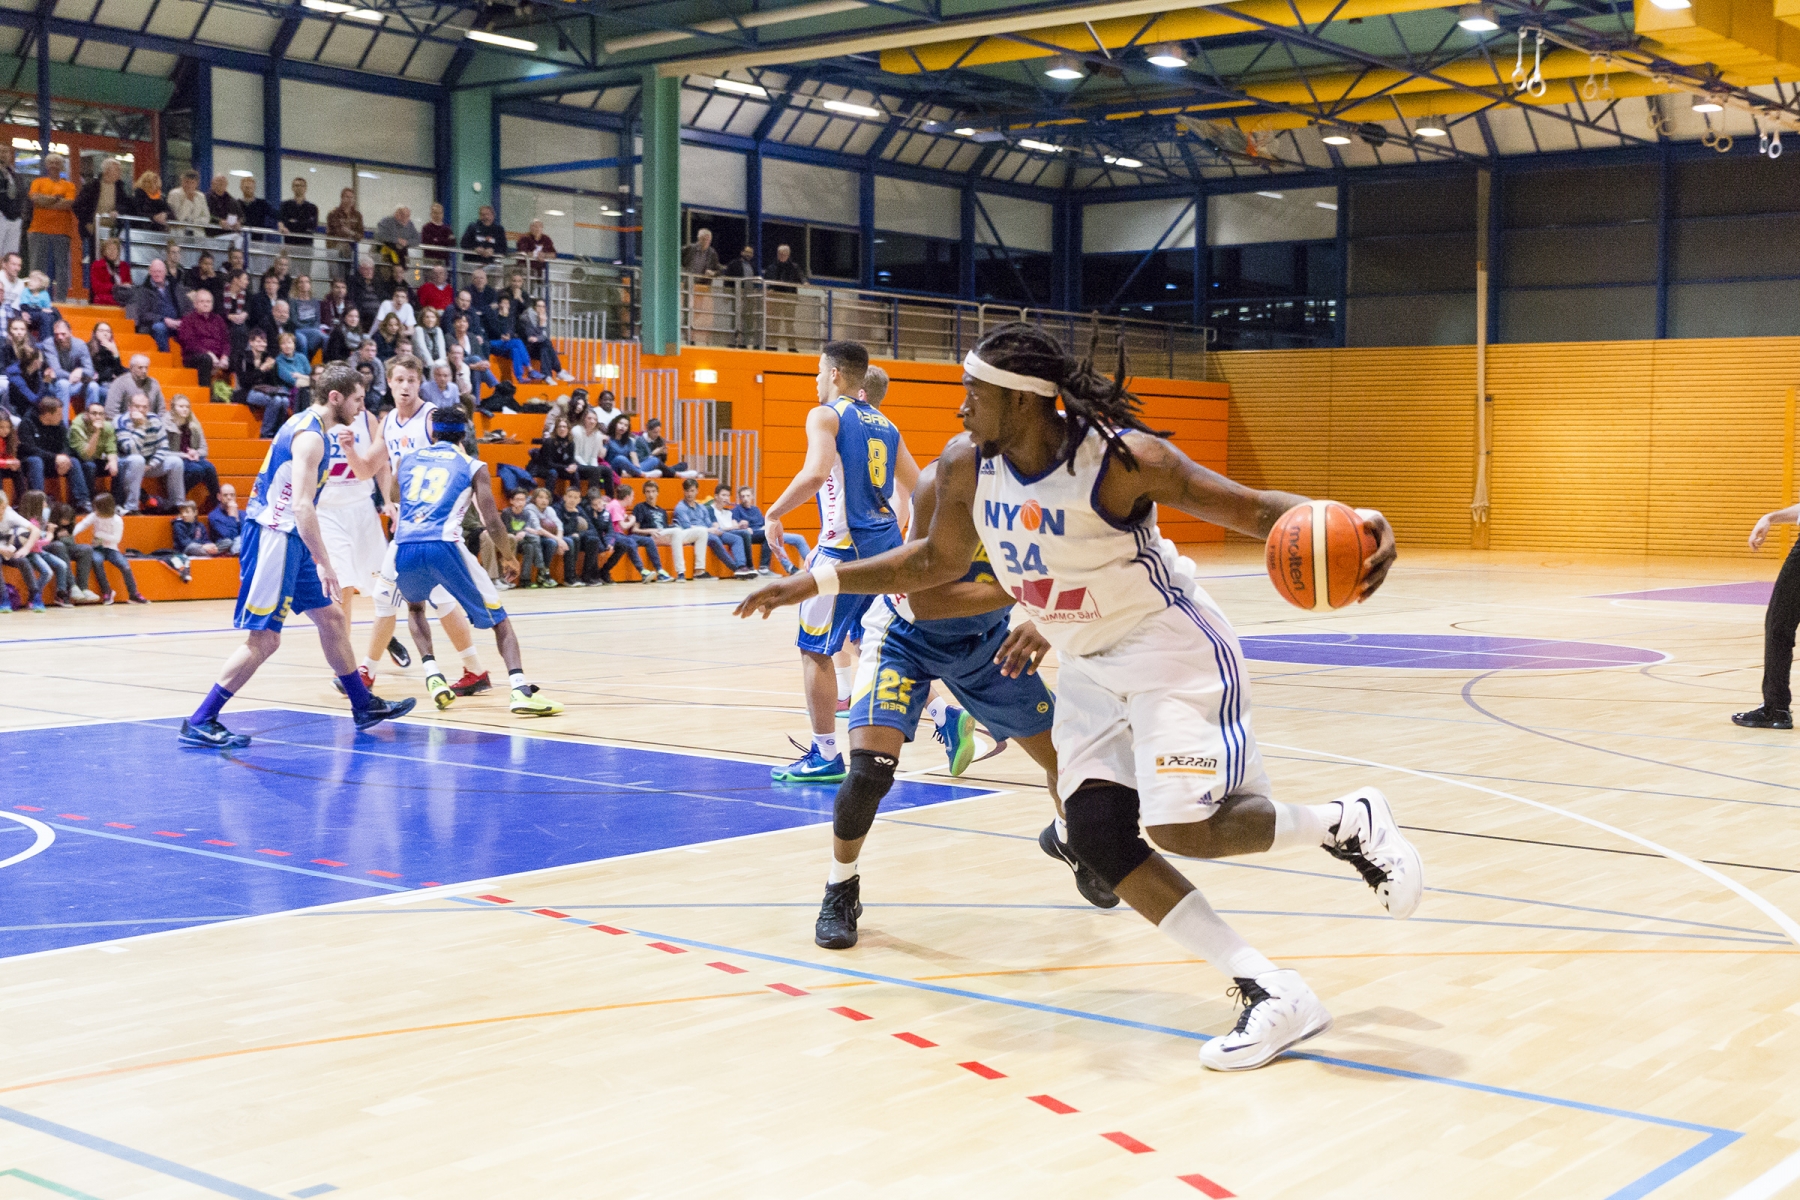 Nyon Basket LNB Nyon vs Meyrin 28.11.2015